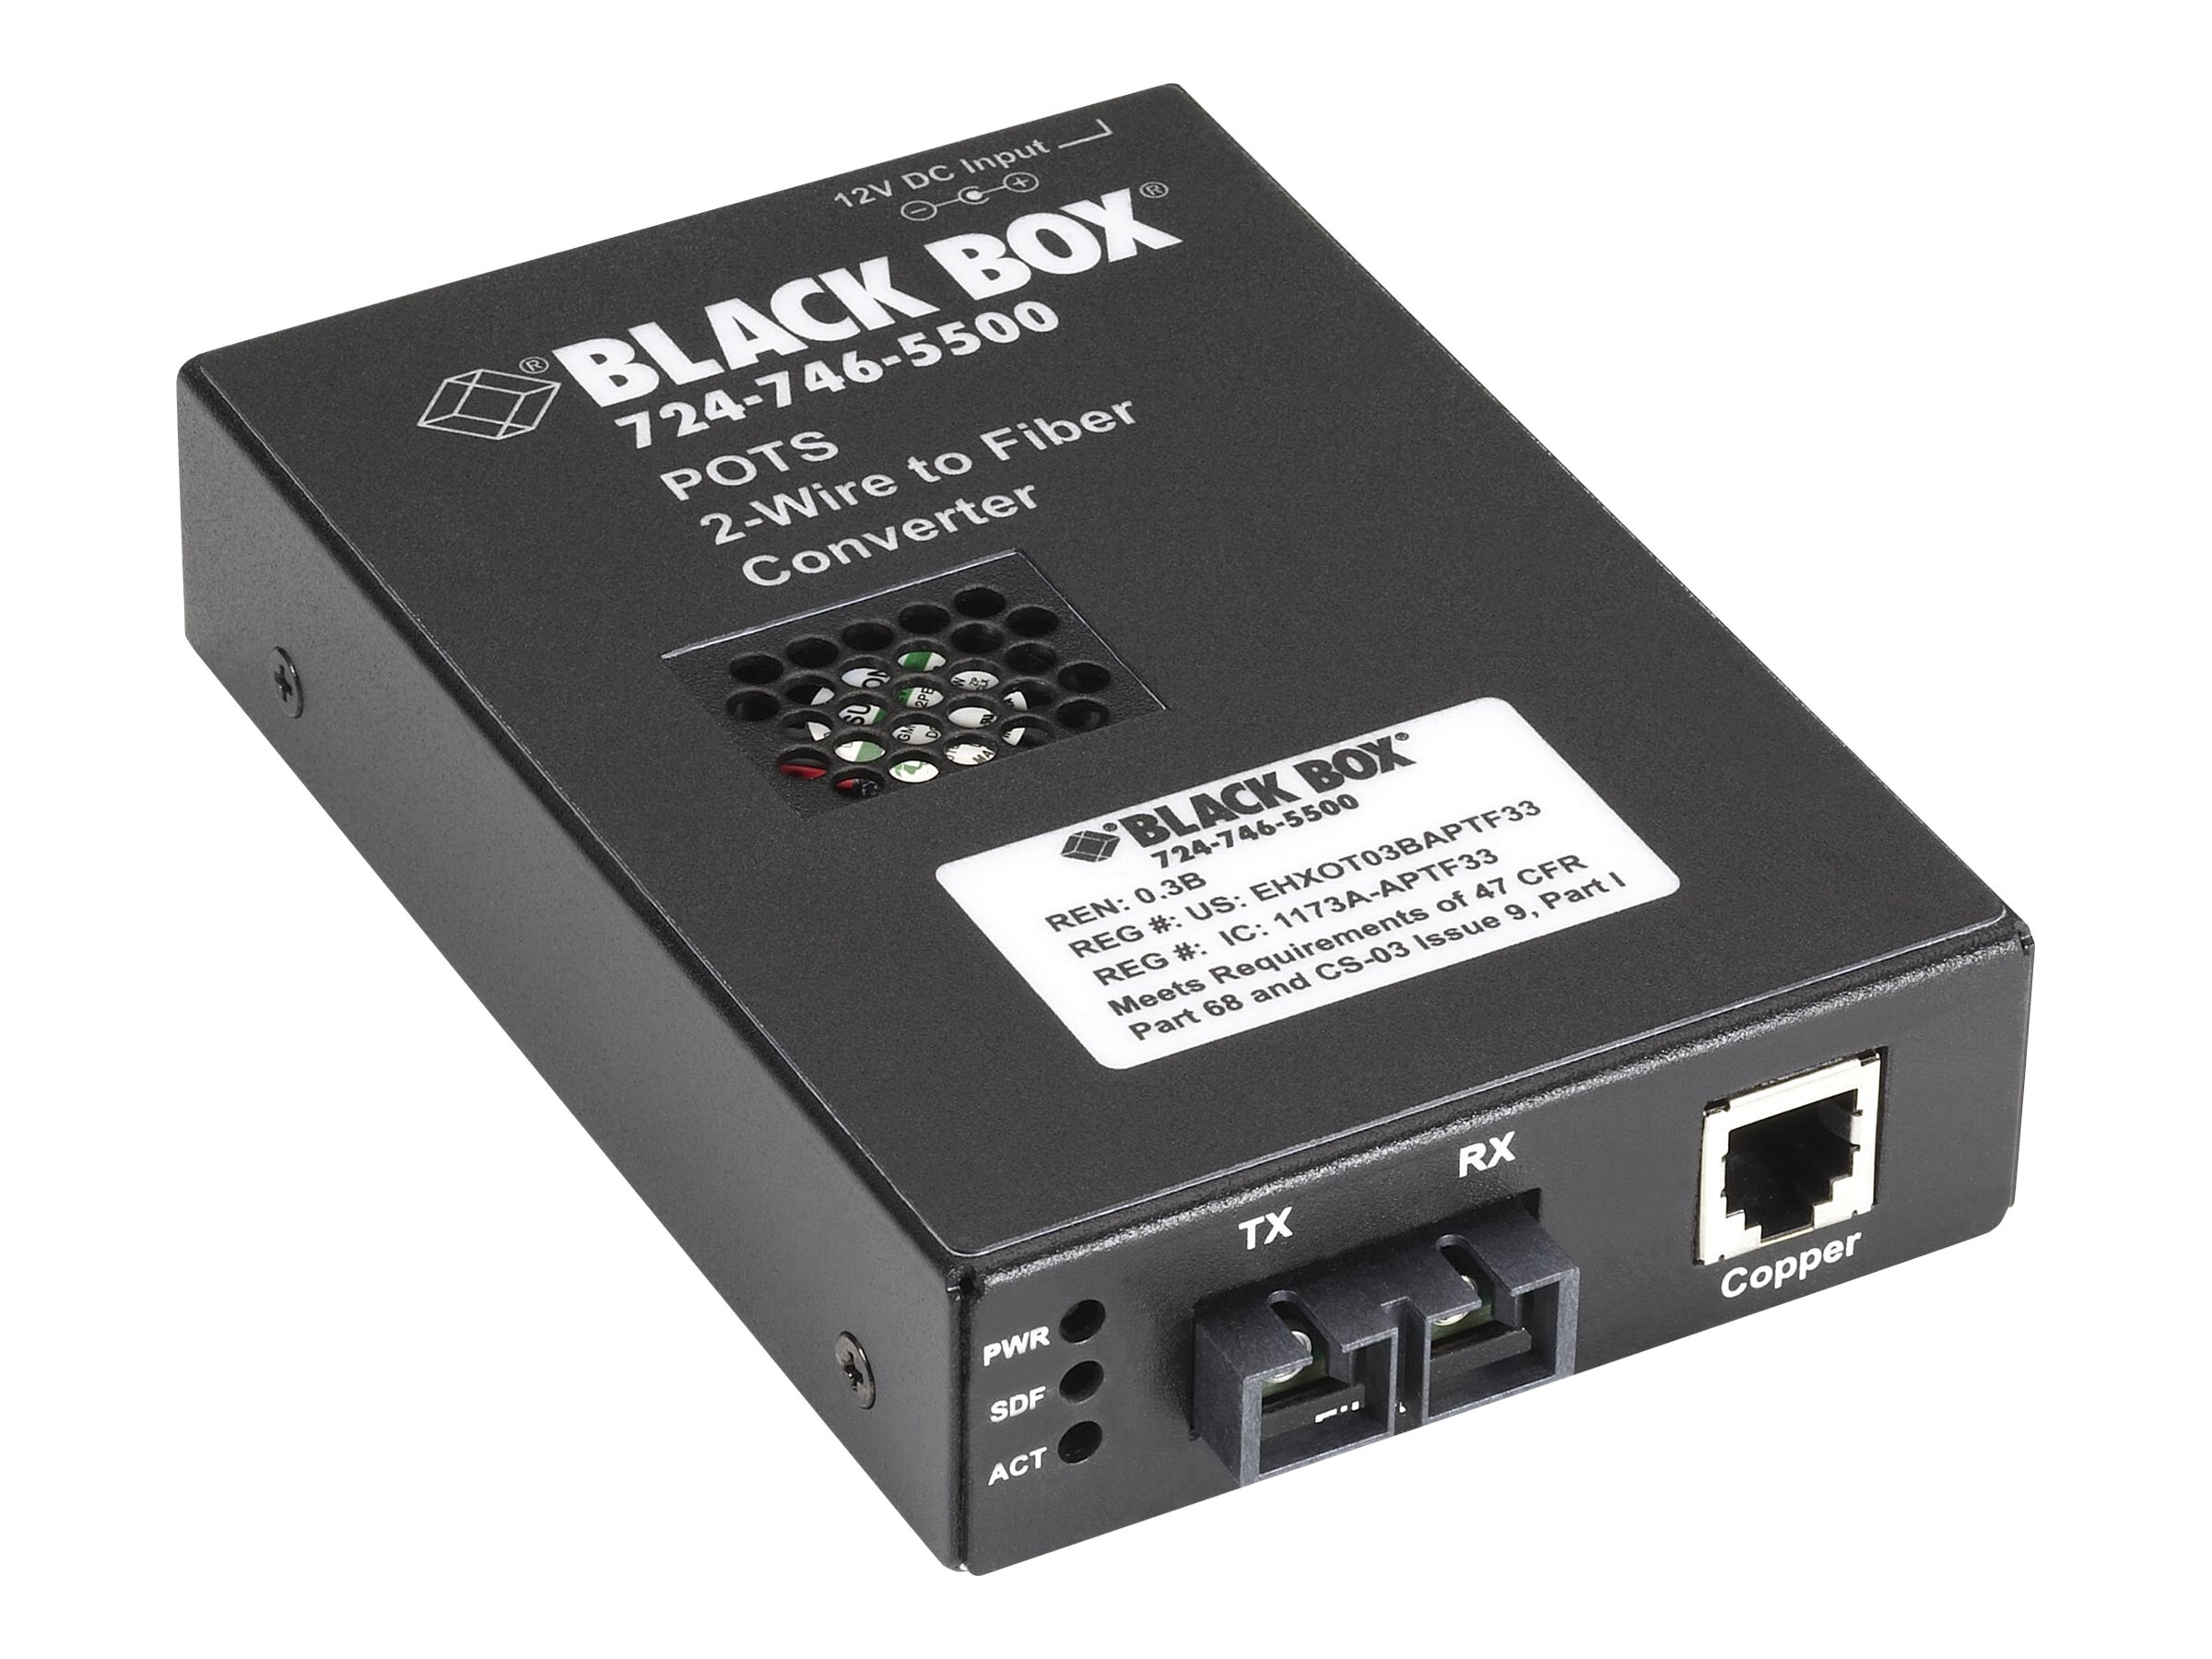 Black Box POTS 2-Wire to Fiber Converter